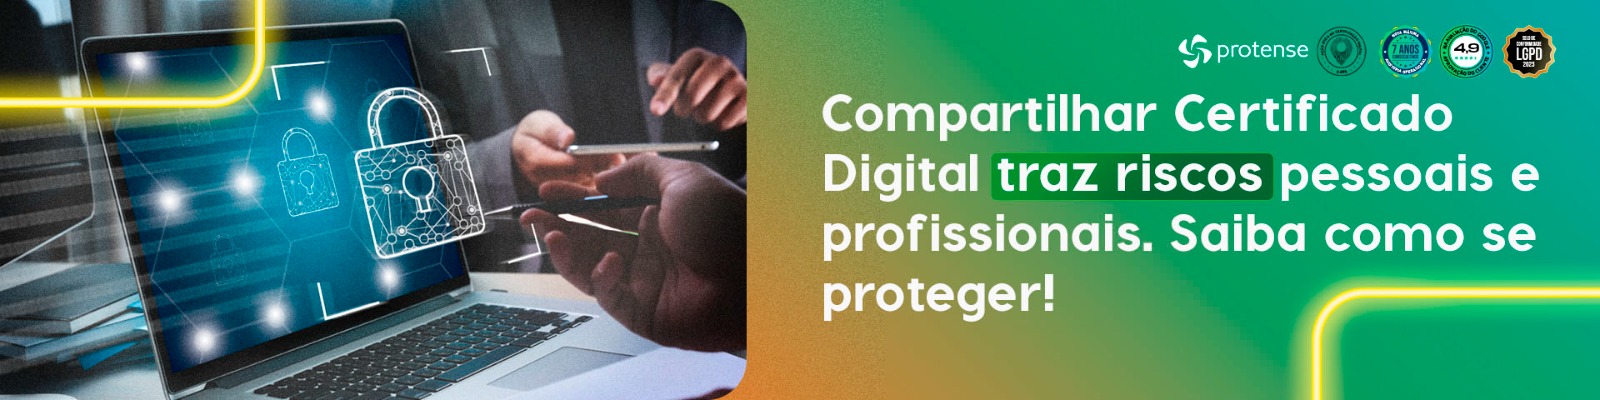 Compartilhar certificado digital traz riscos pessoais e profissionais. Saiba se proteger